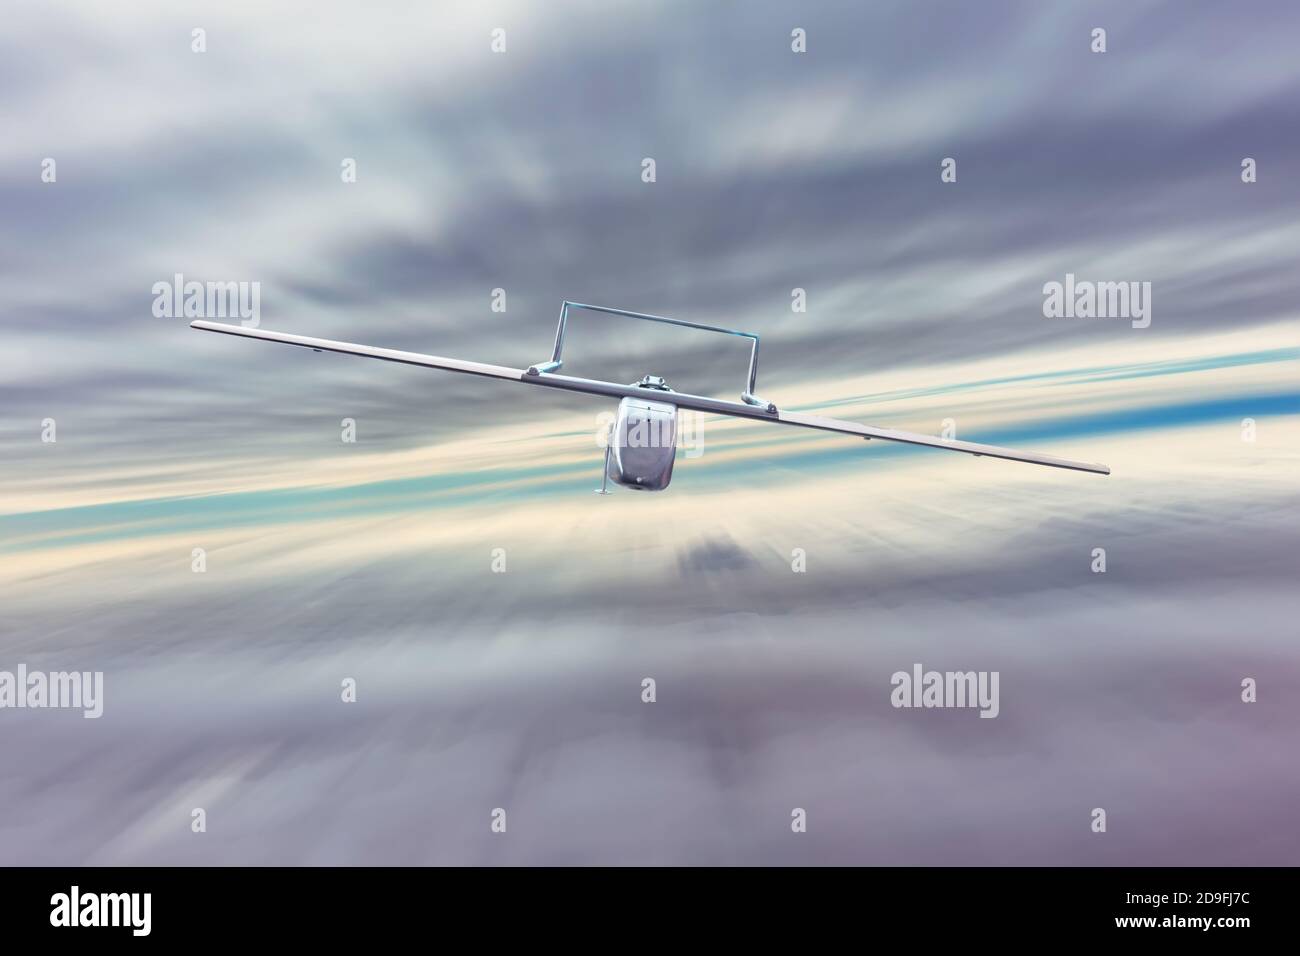 Le drone militaire sans pilote uav vole à grande vitesse dans des nuages denses, retournant à la base militaire de départ Banque D'Images